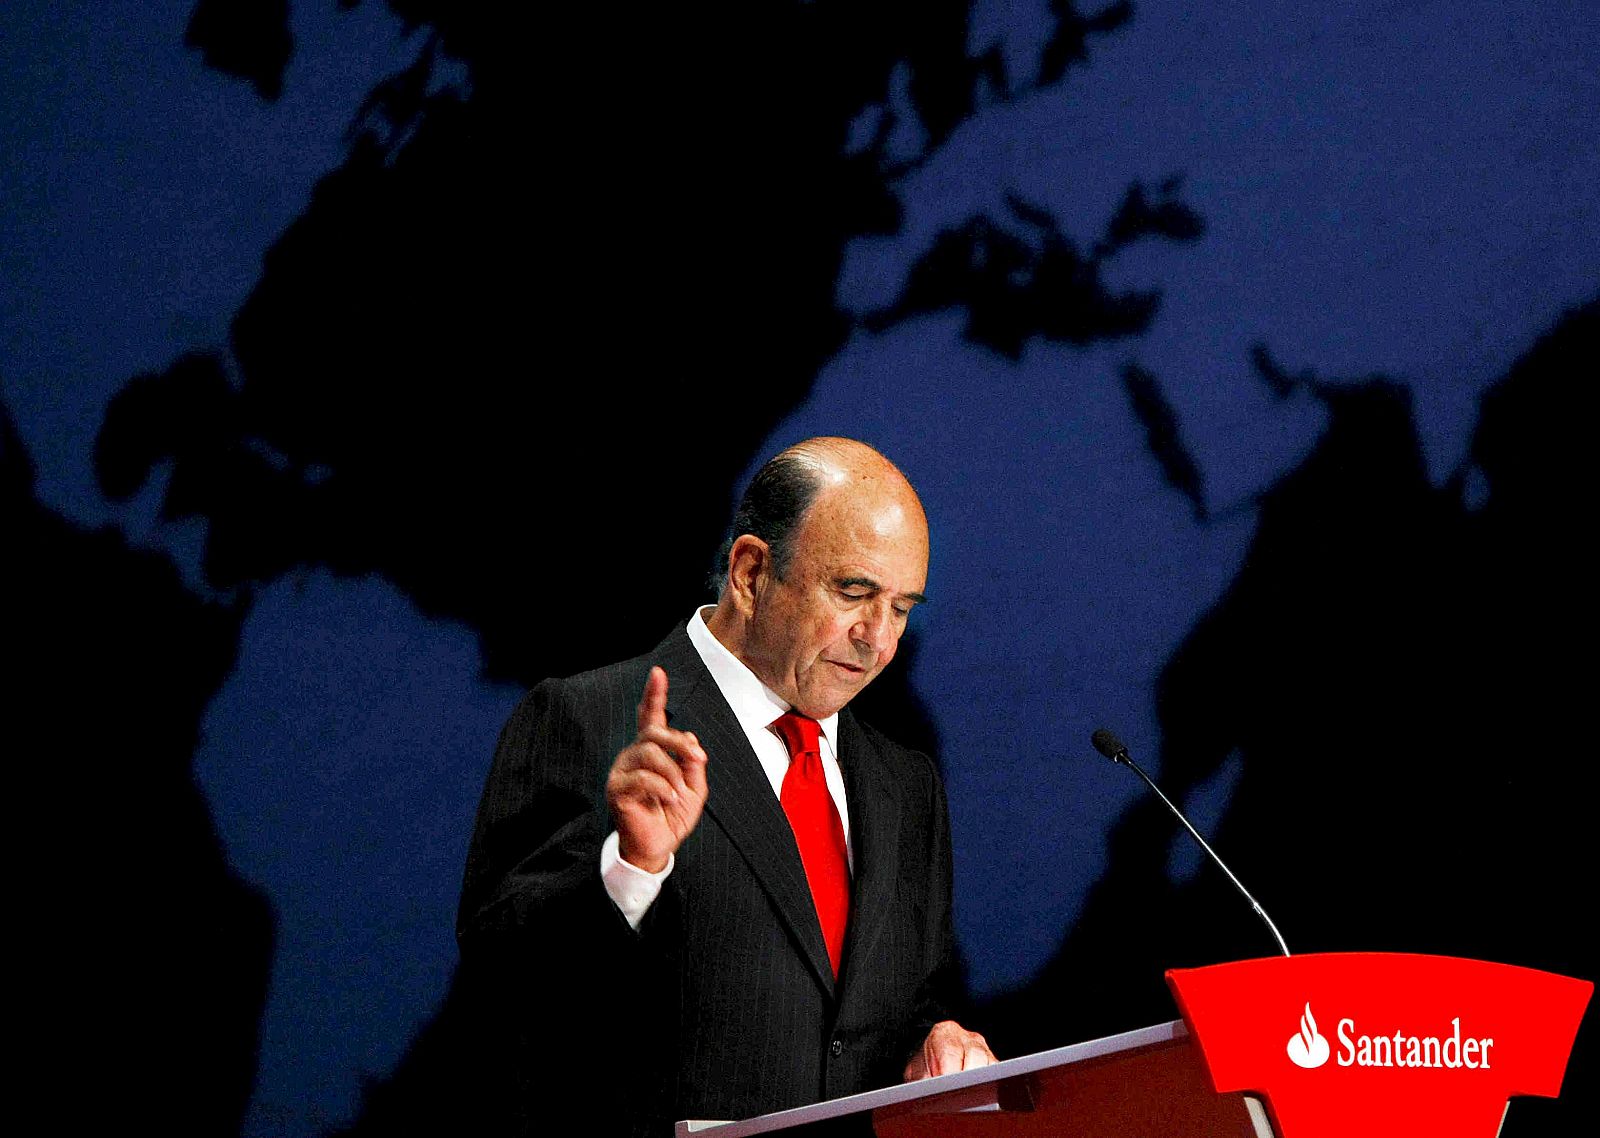 El presidente del Banco Santander, Emilio Botín, interviene durante la Junta General Ordinaria de Accionistas de la entidad